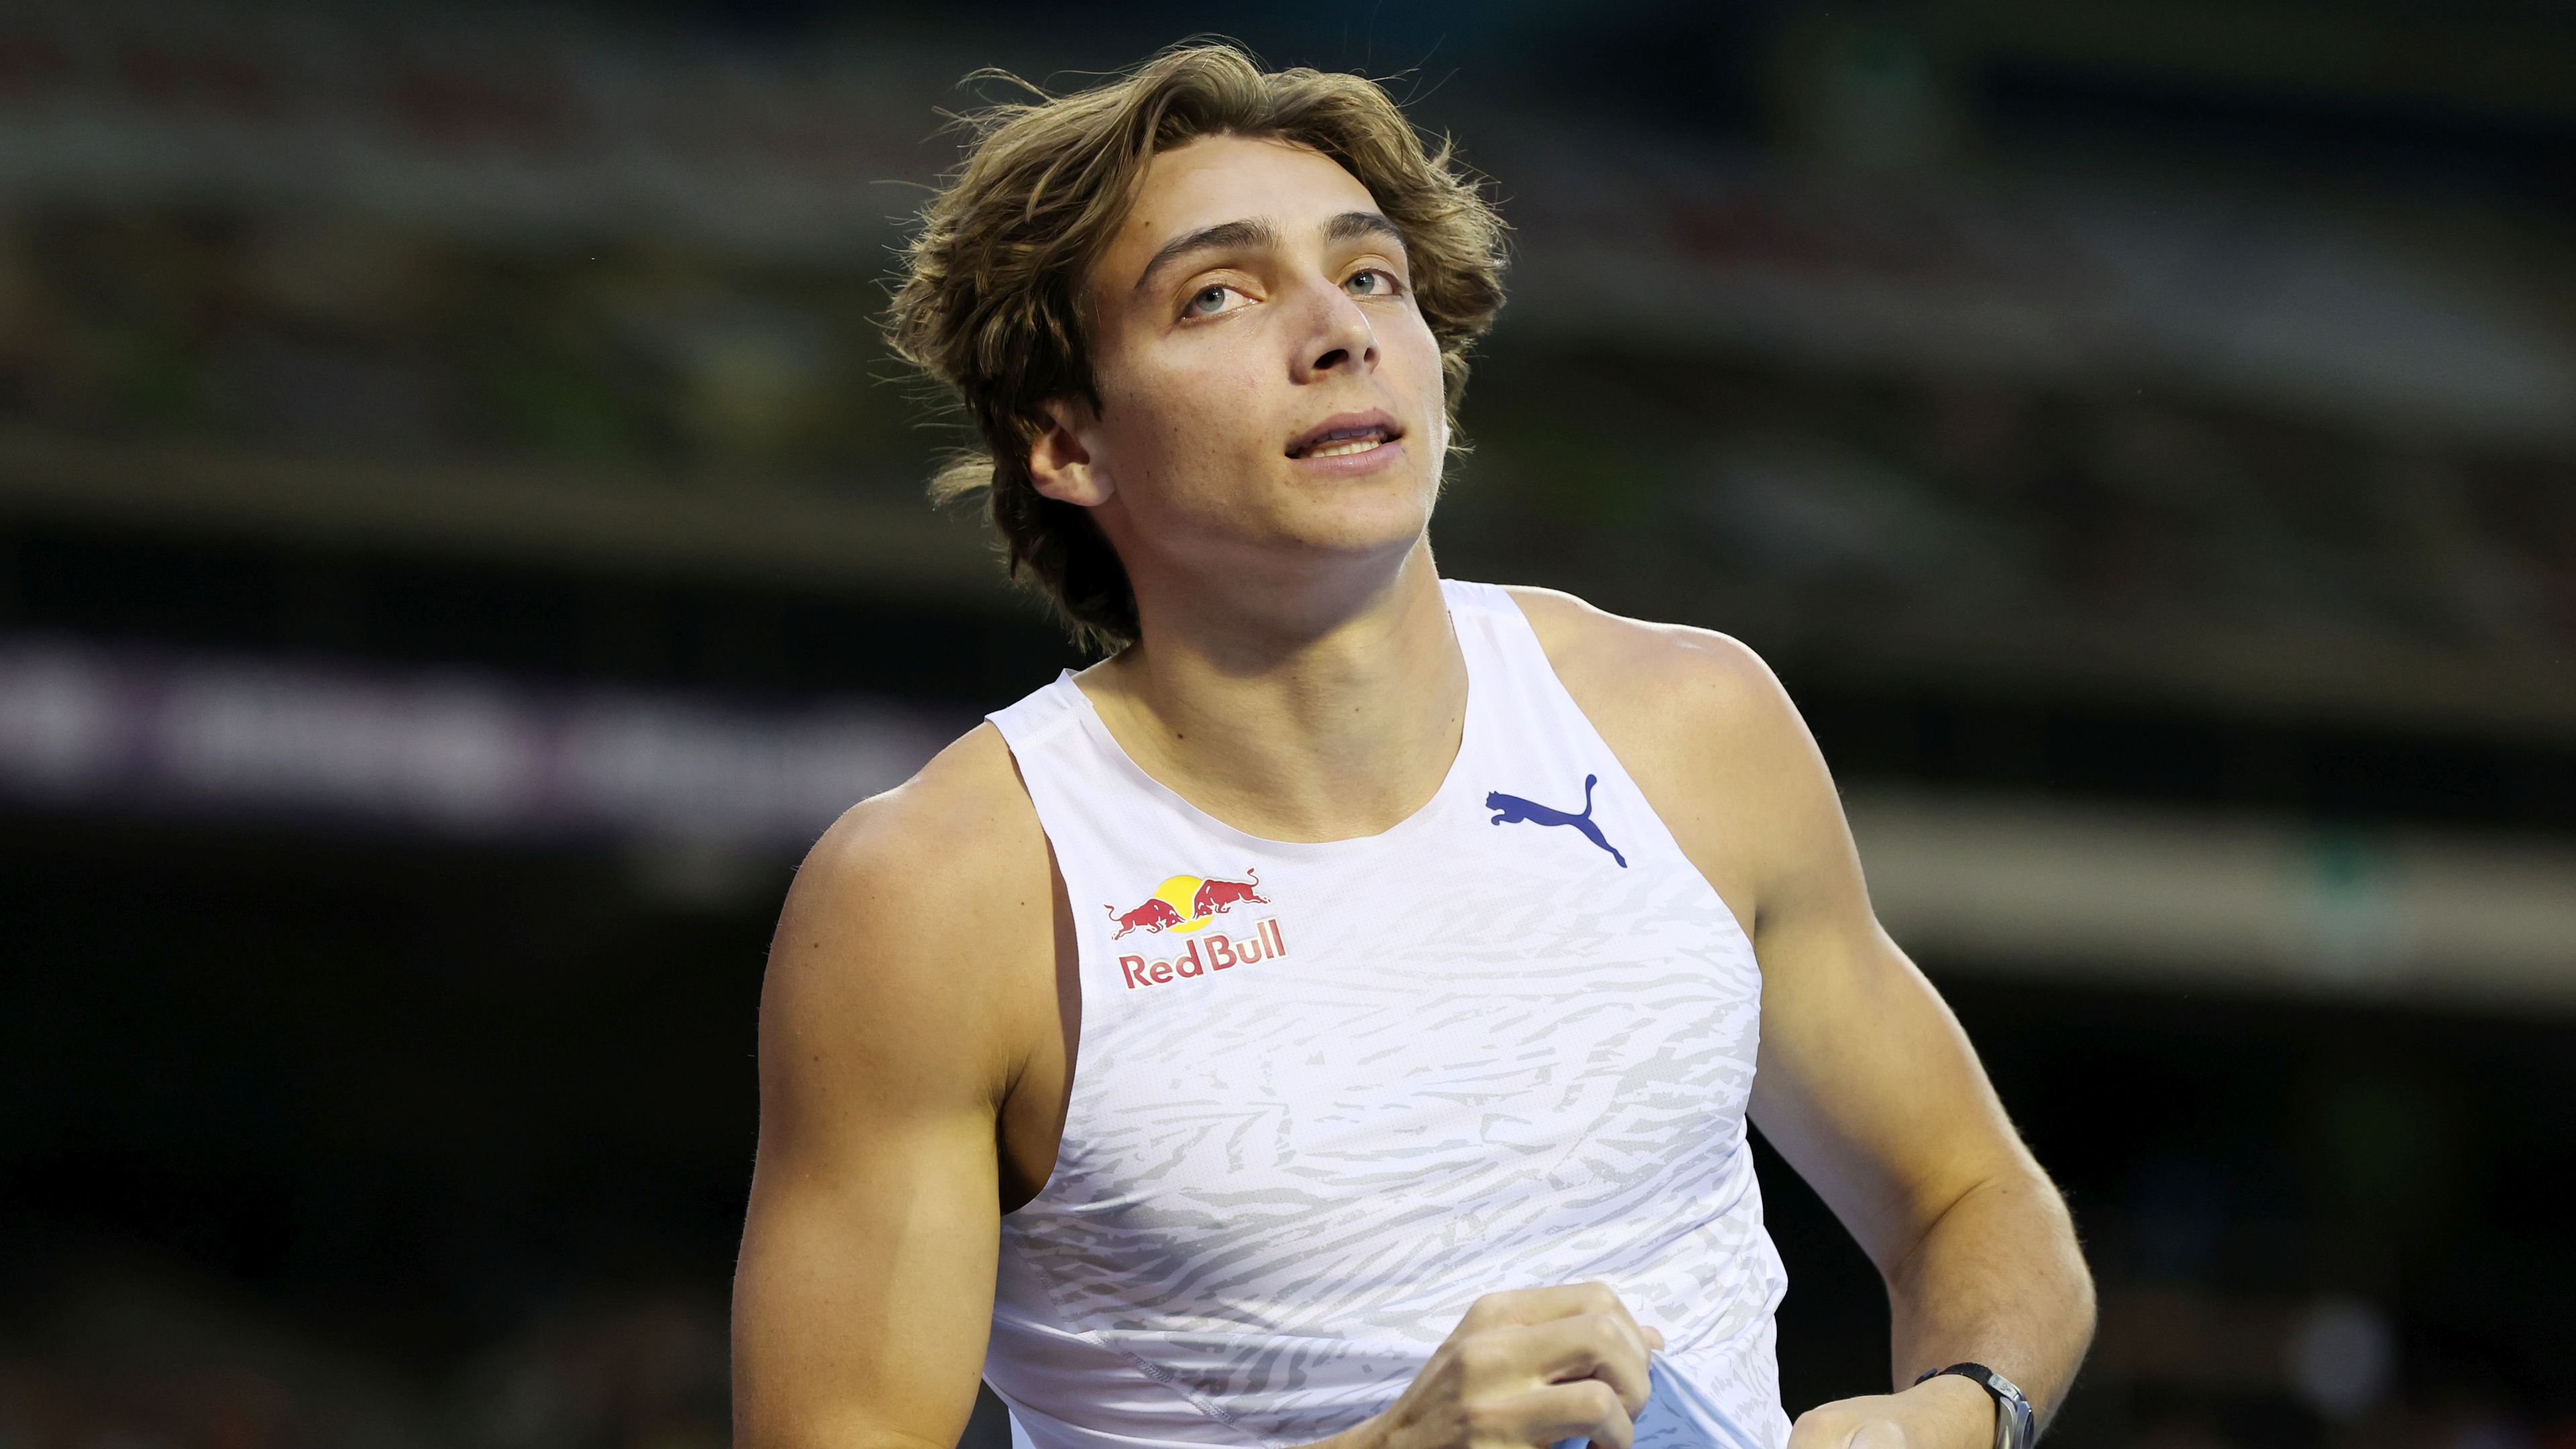 Armand Duplantis társbérletben lett a legjobb európai férfi atléta (fotó: Getty Images)